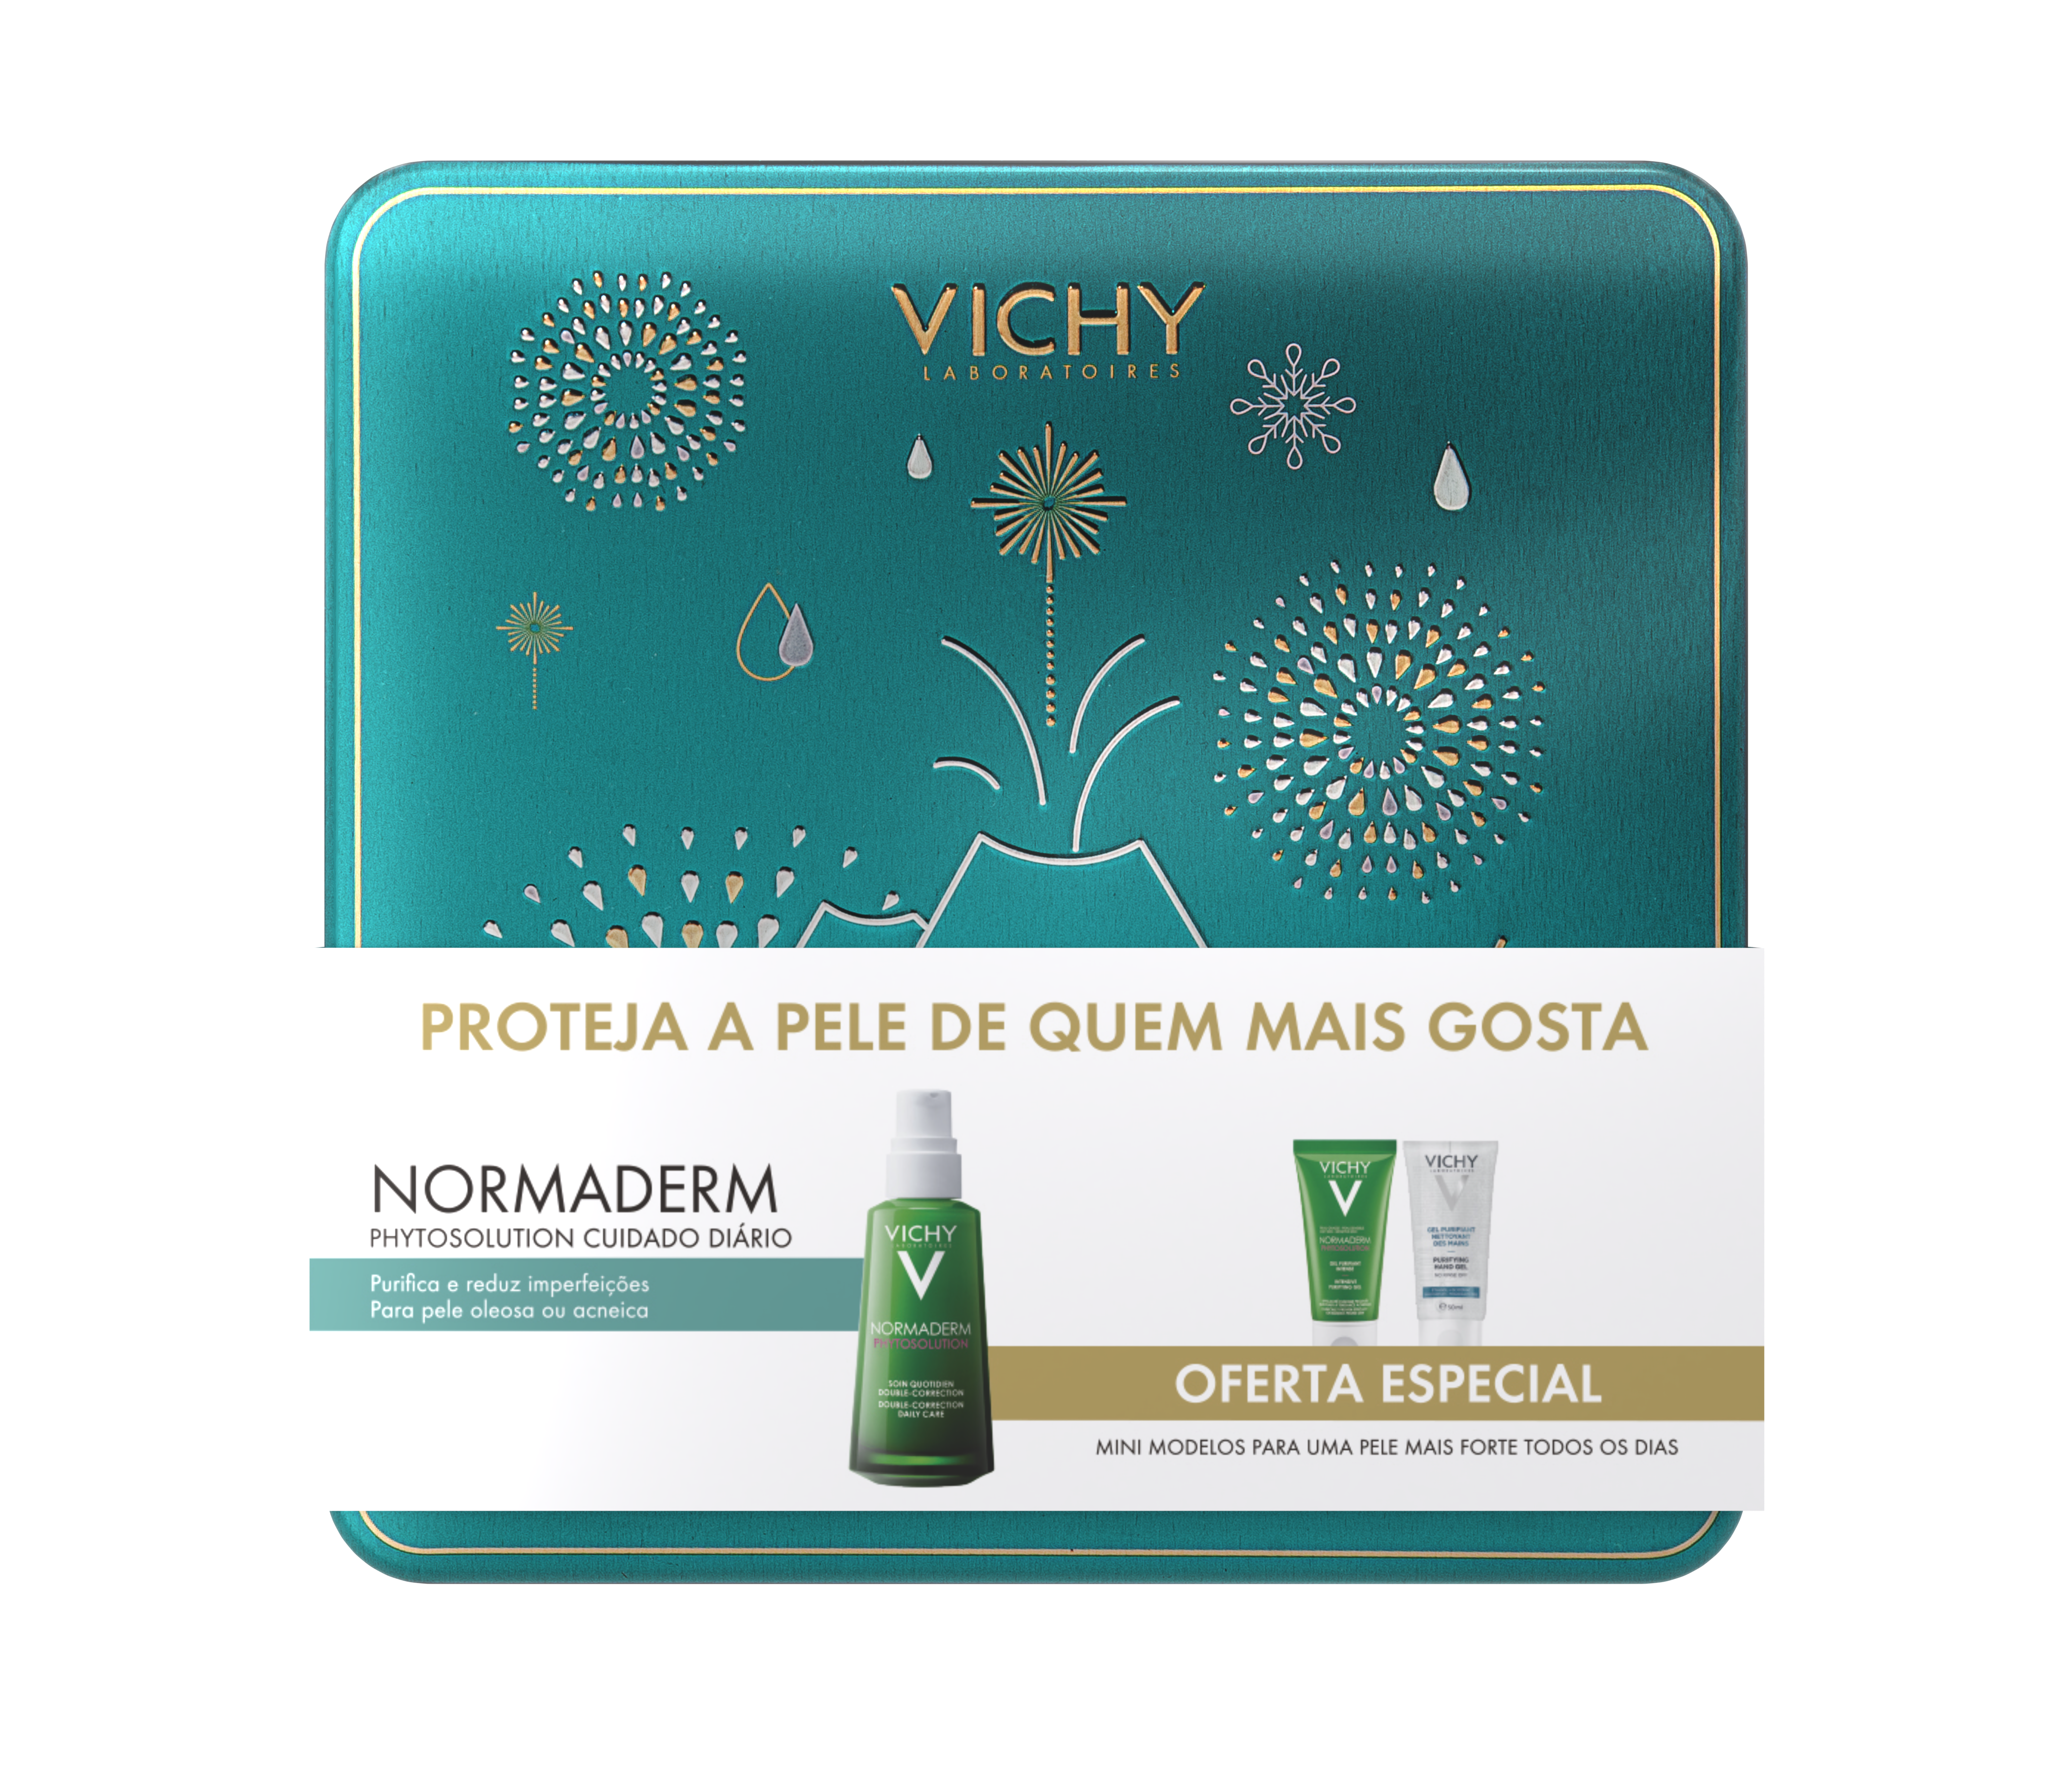 Coffret Vichy Normaderm Phytosolution para pele oleosa ou com tendência acneica (Normaderm Phytosolution Gel + gel de limpeza purificante + Gel Hidroalcoólico), €18,50